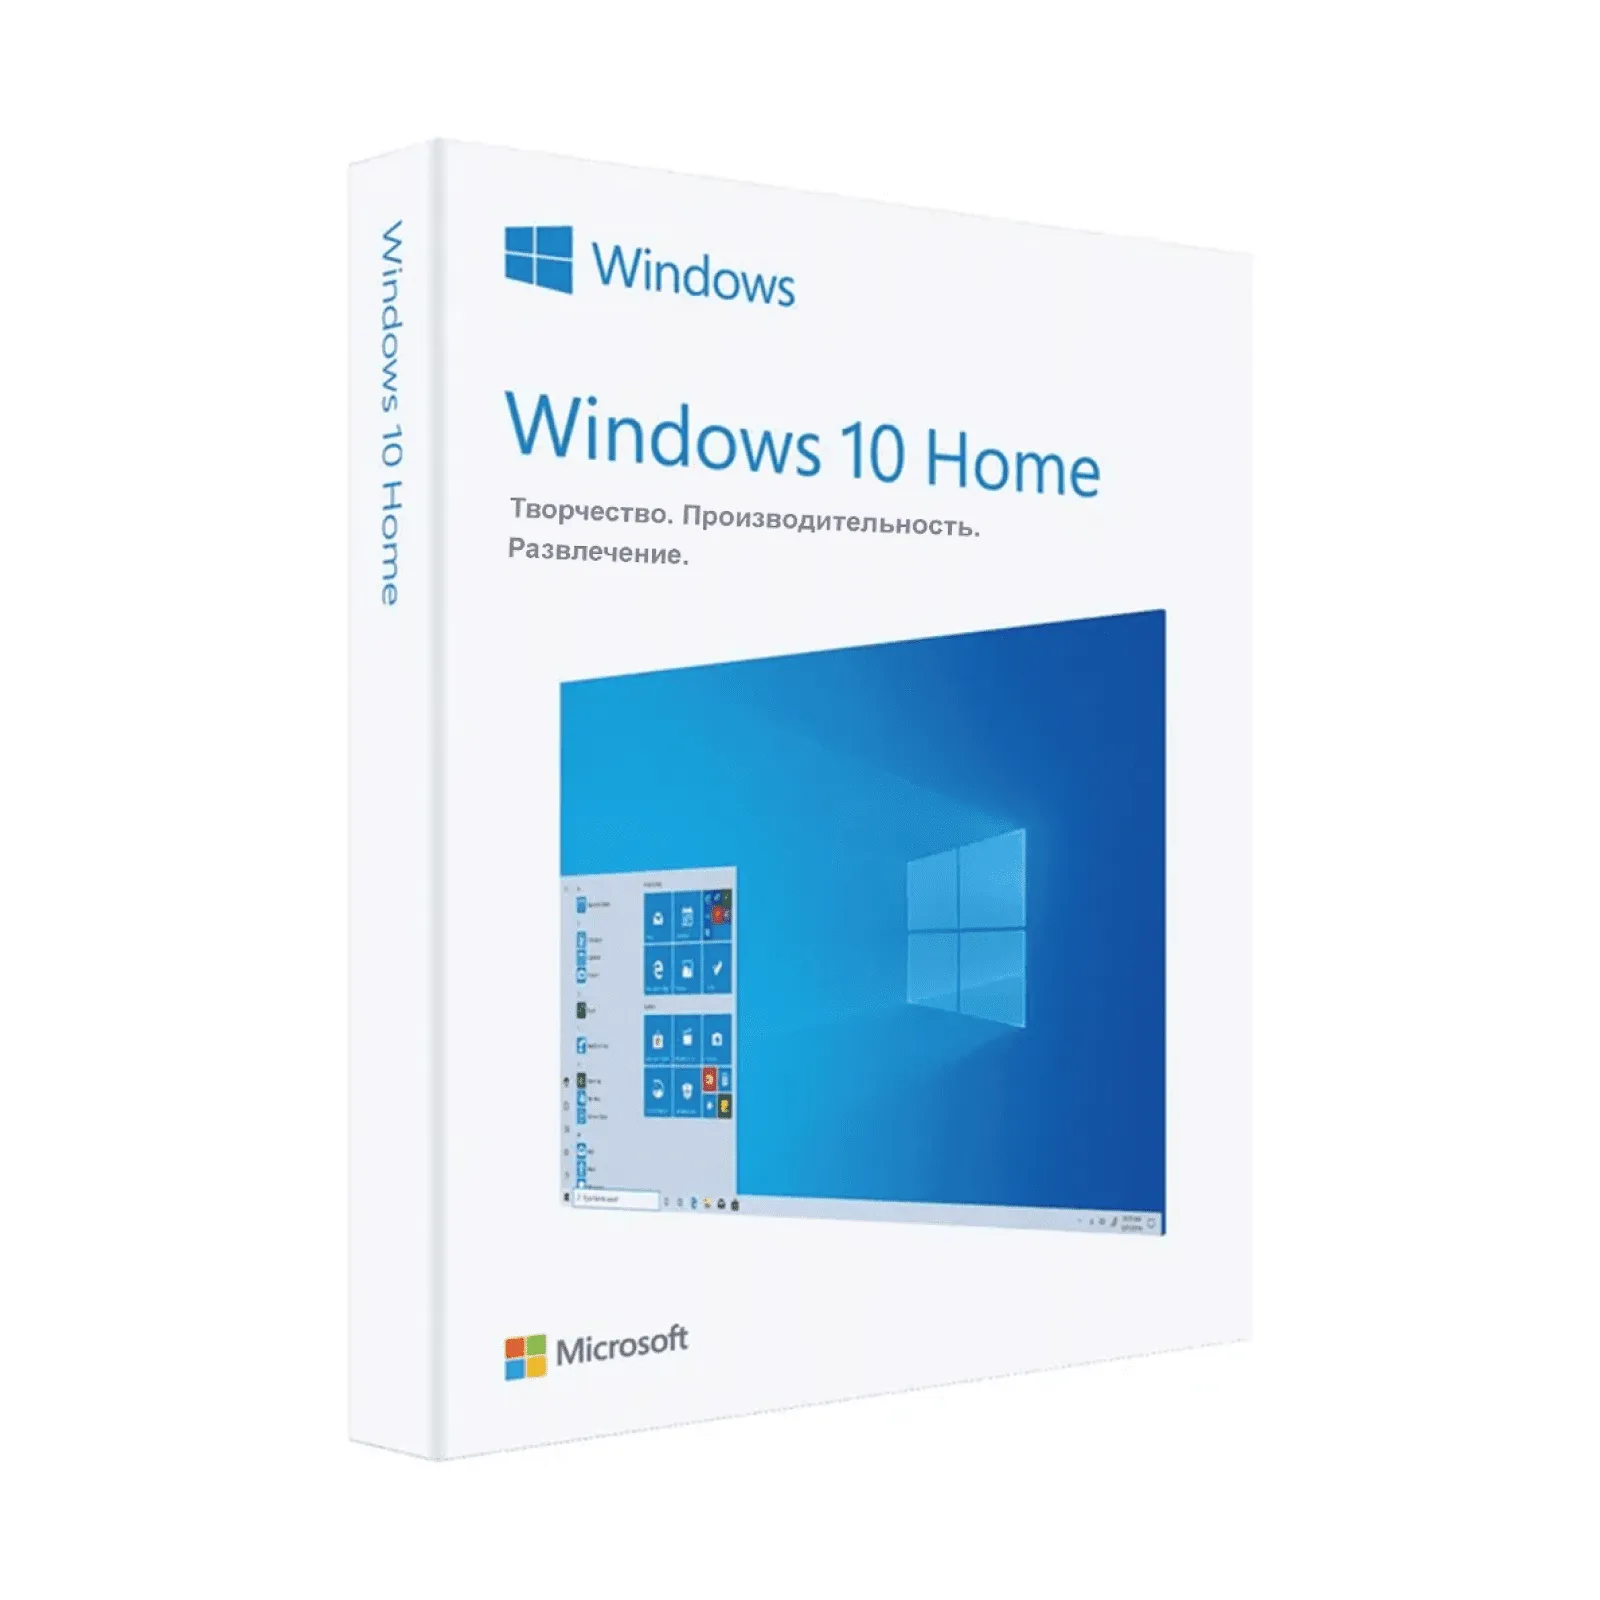 Windows 10 Home ( Uy ) uchun faollashtirish kaliti#1